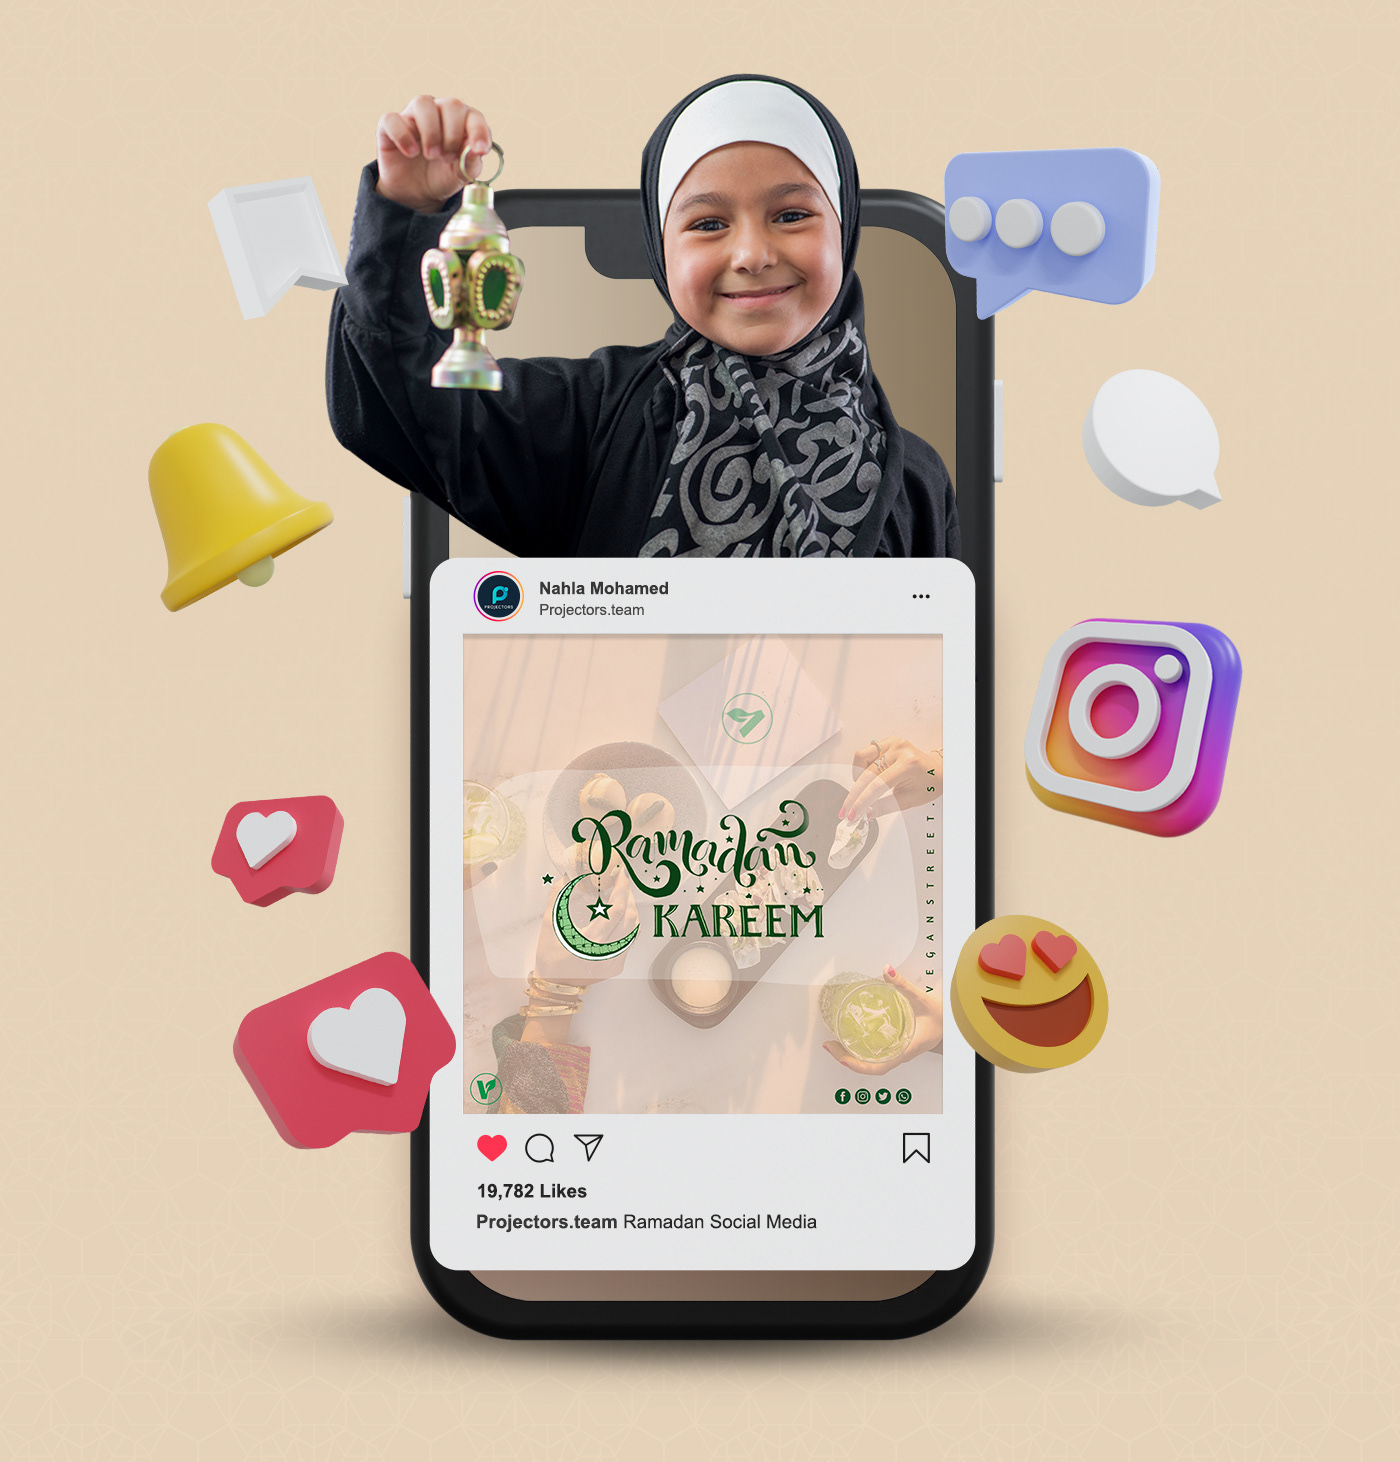 media ramadan ramadan kareem social social media